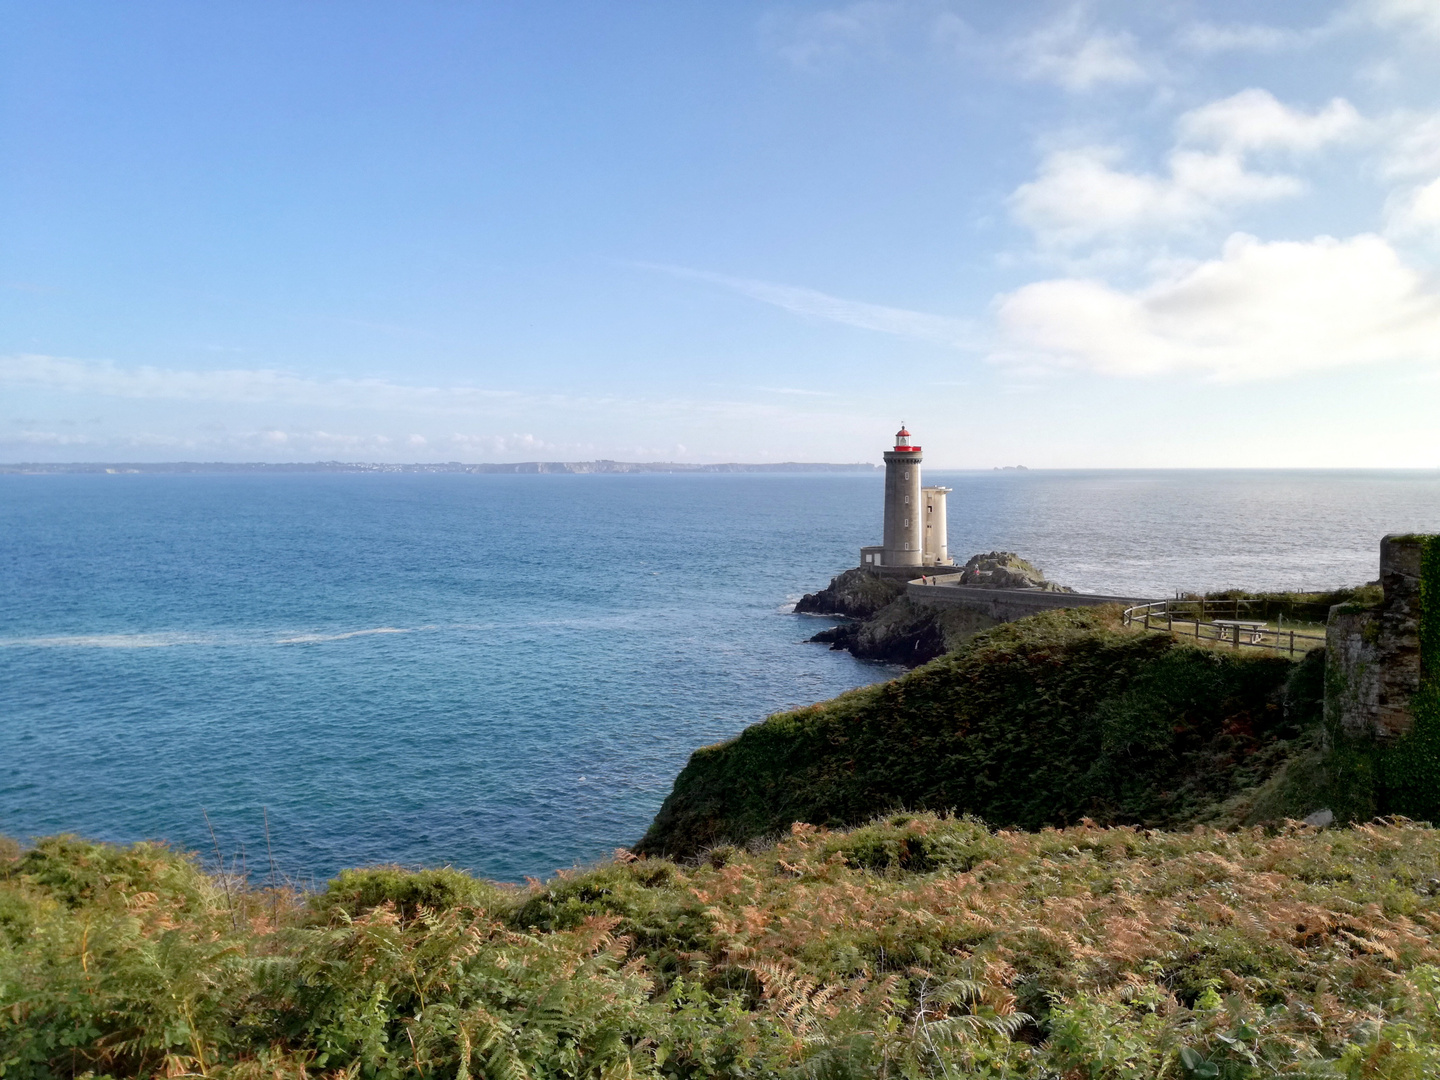 Le phare du Petit Minou, Finistère